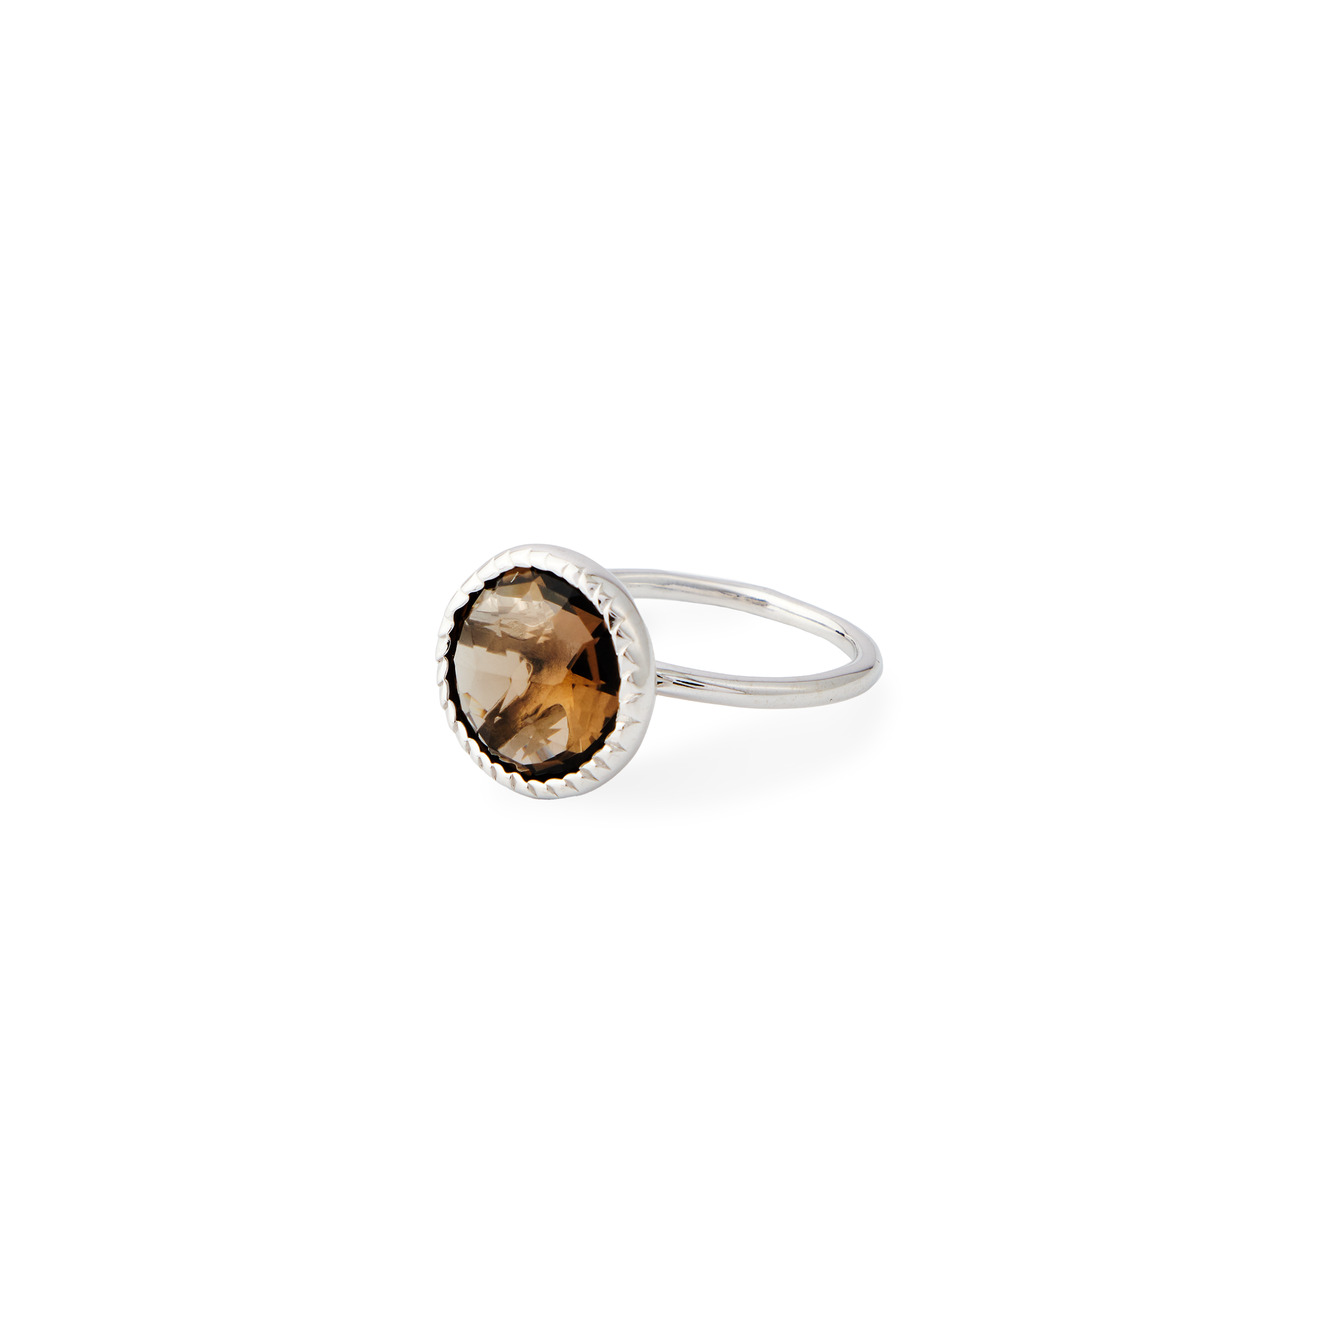 Wisteria Gems Серебряное кольцо тонкое с круаным дымчатым кварцем безразмерное кольцо с дымчатым кварцем